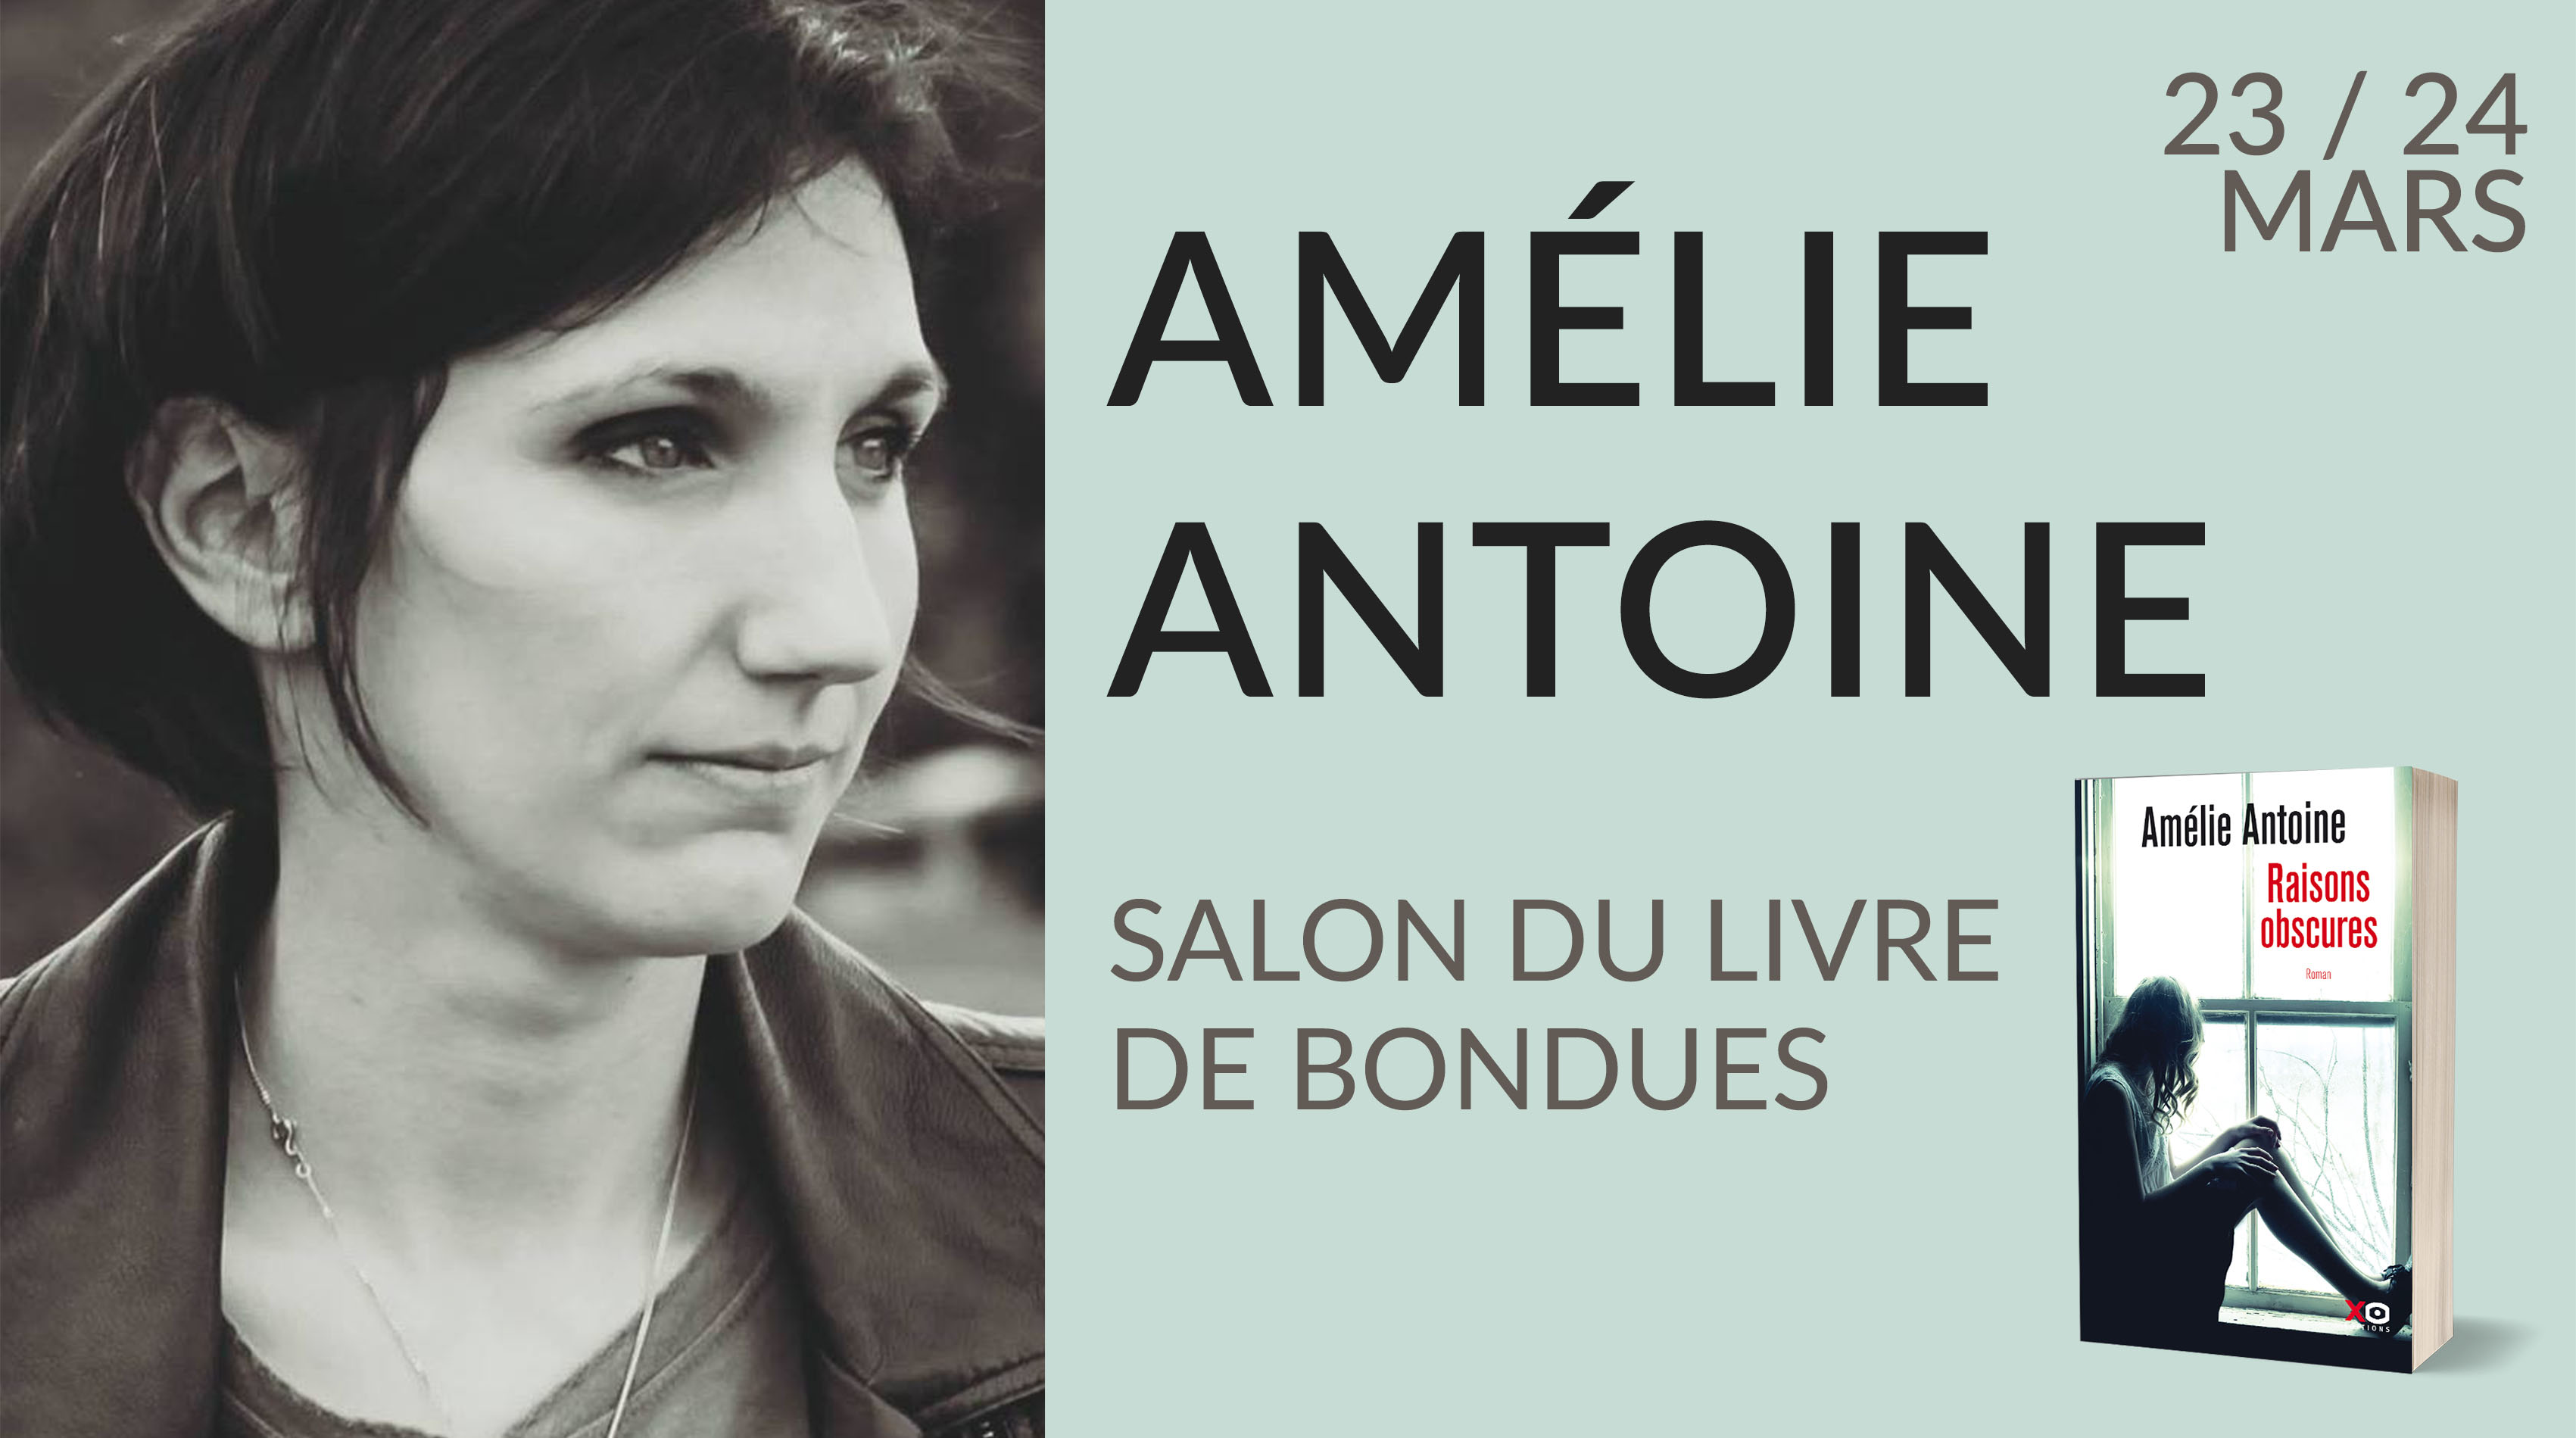 SALON DU LIVRE DE BONDUES - AMÉLIE ANTOINE